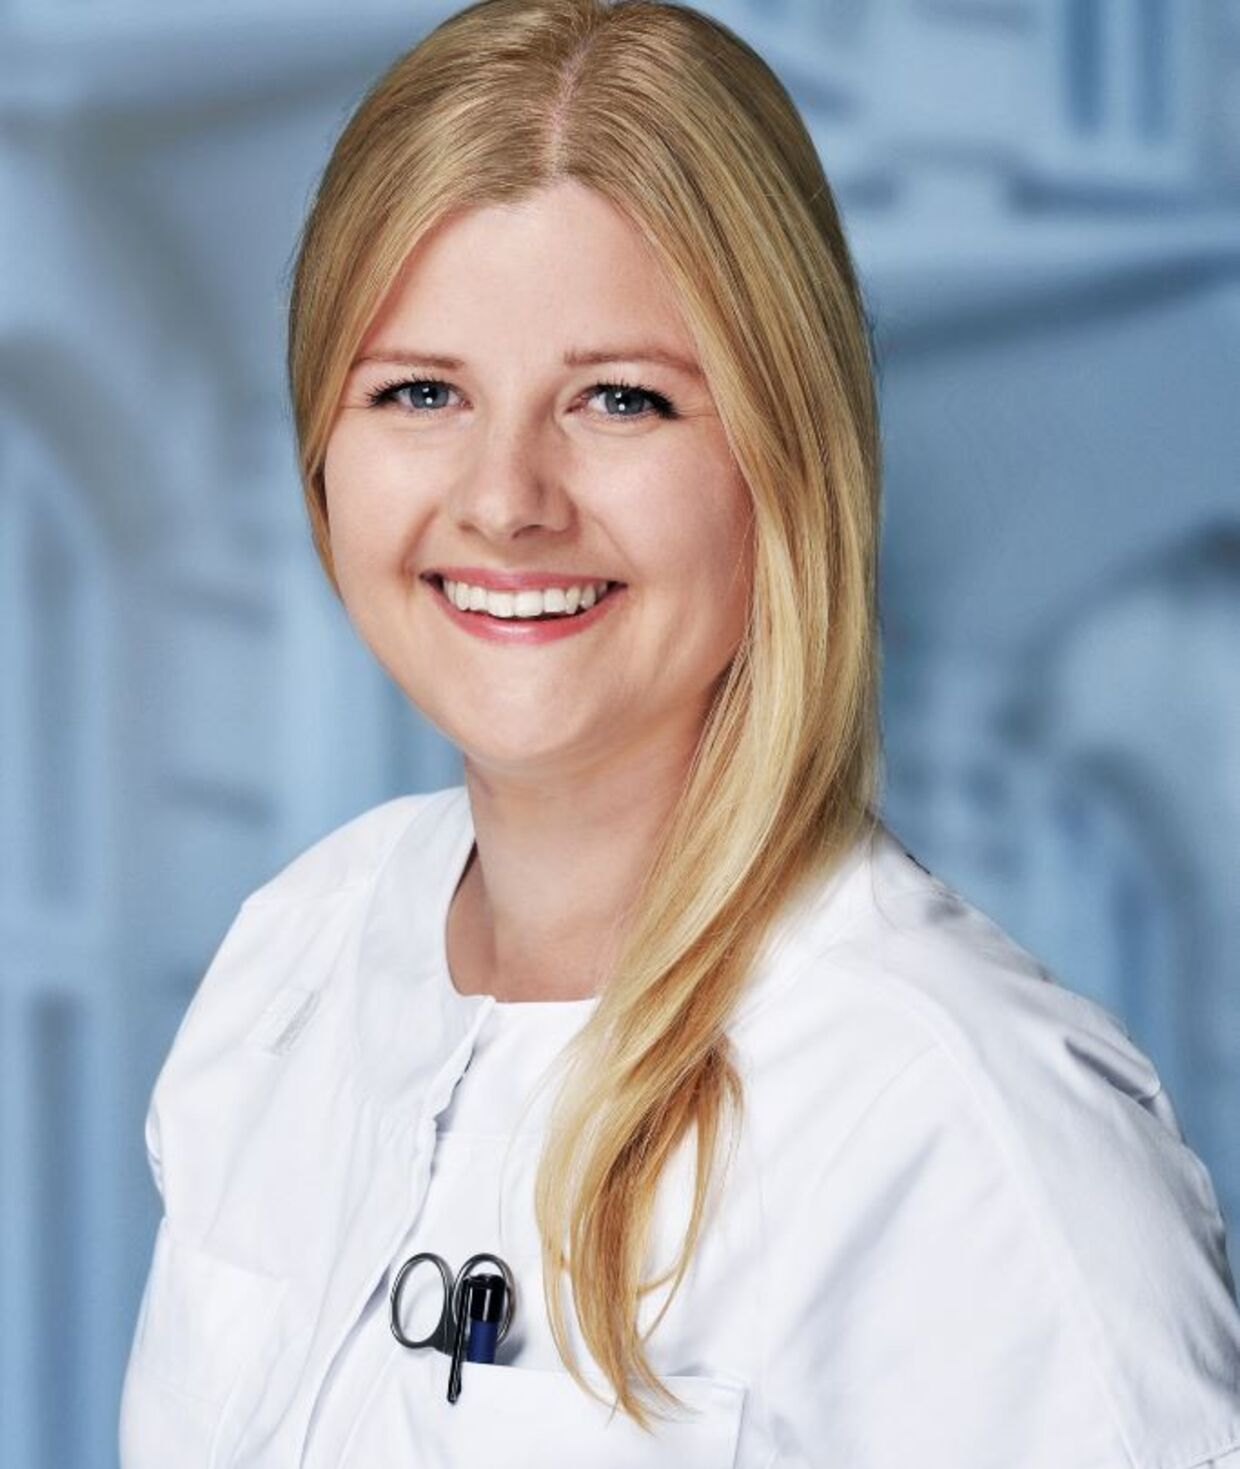 Christine Dal er sygeplejerske på Gentofte Hospital og regionsrådsmedlem i Region Hovedstaden (V).